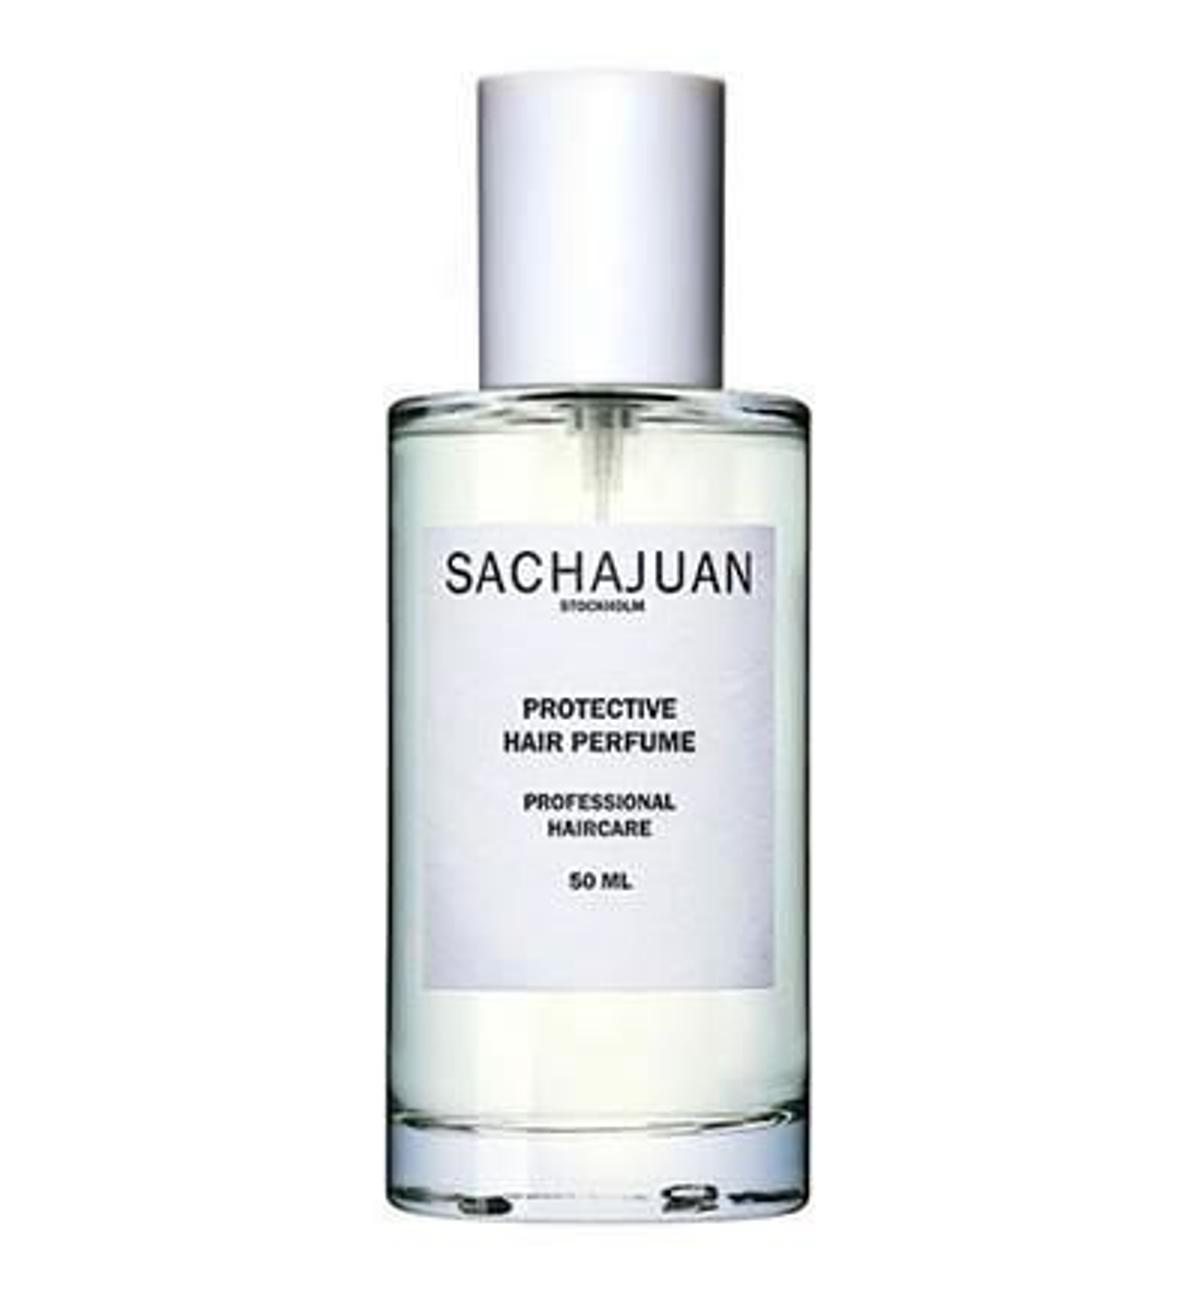 Perfume protector del cabello, Sachajuan